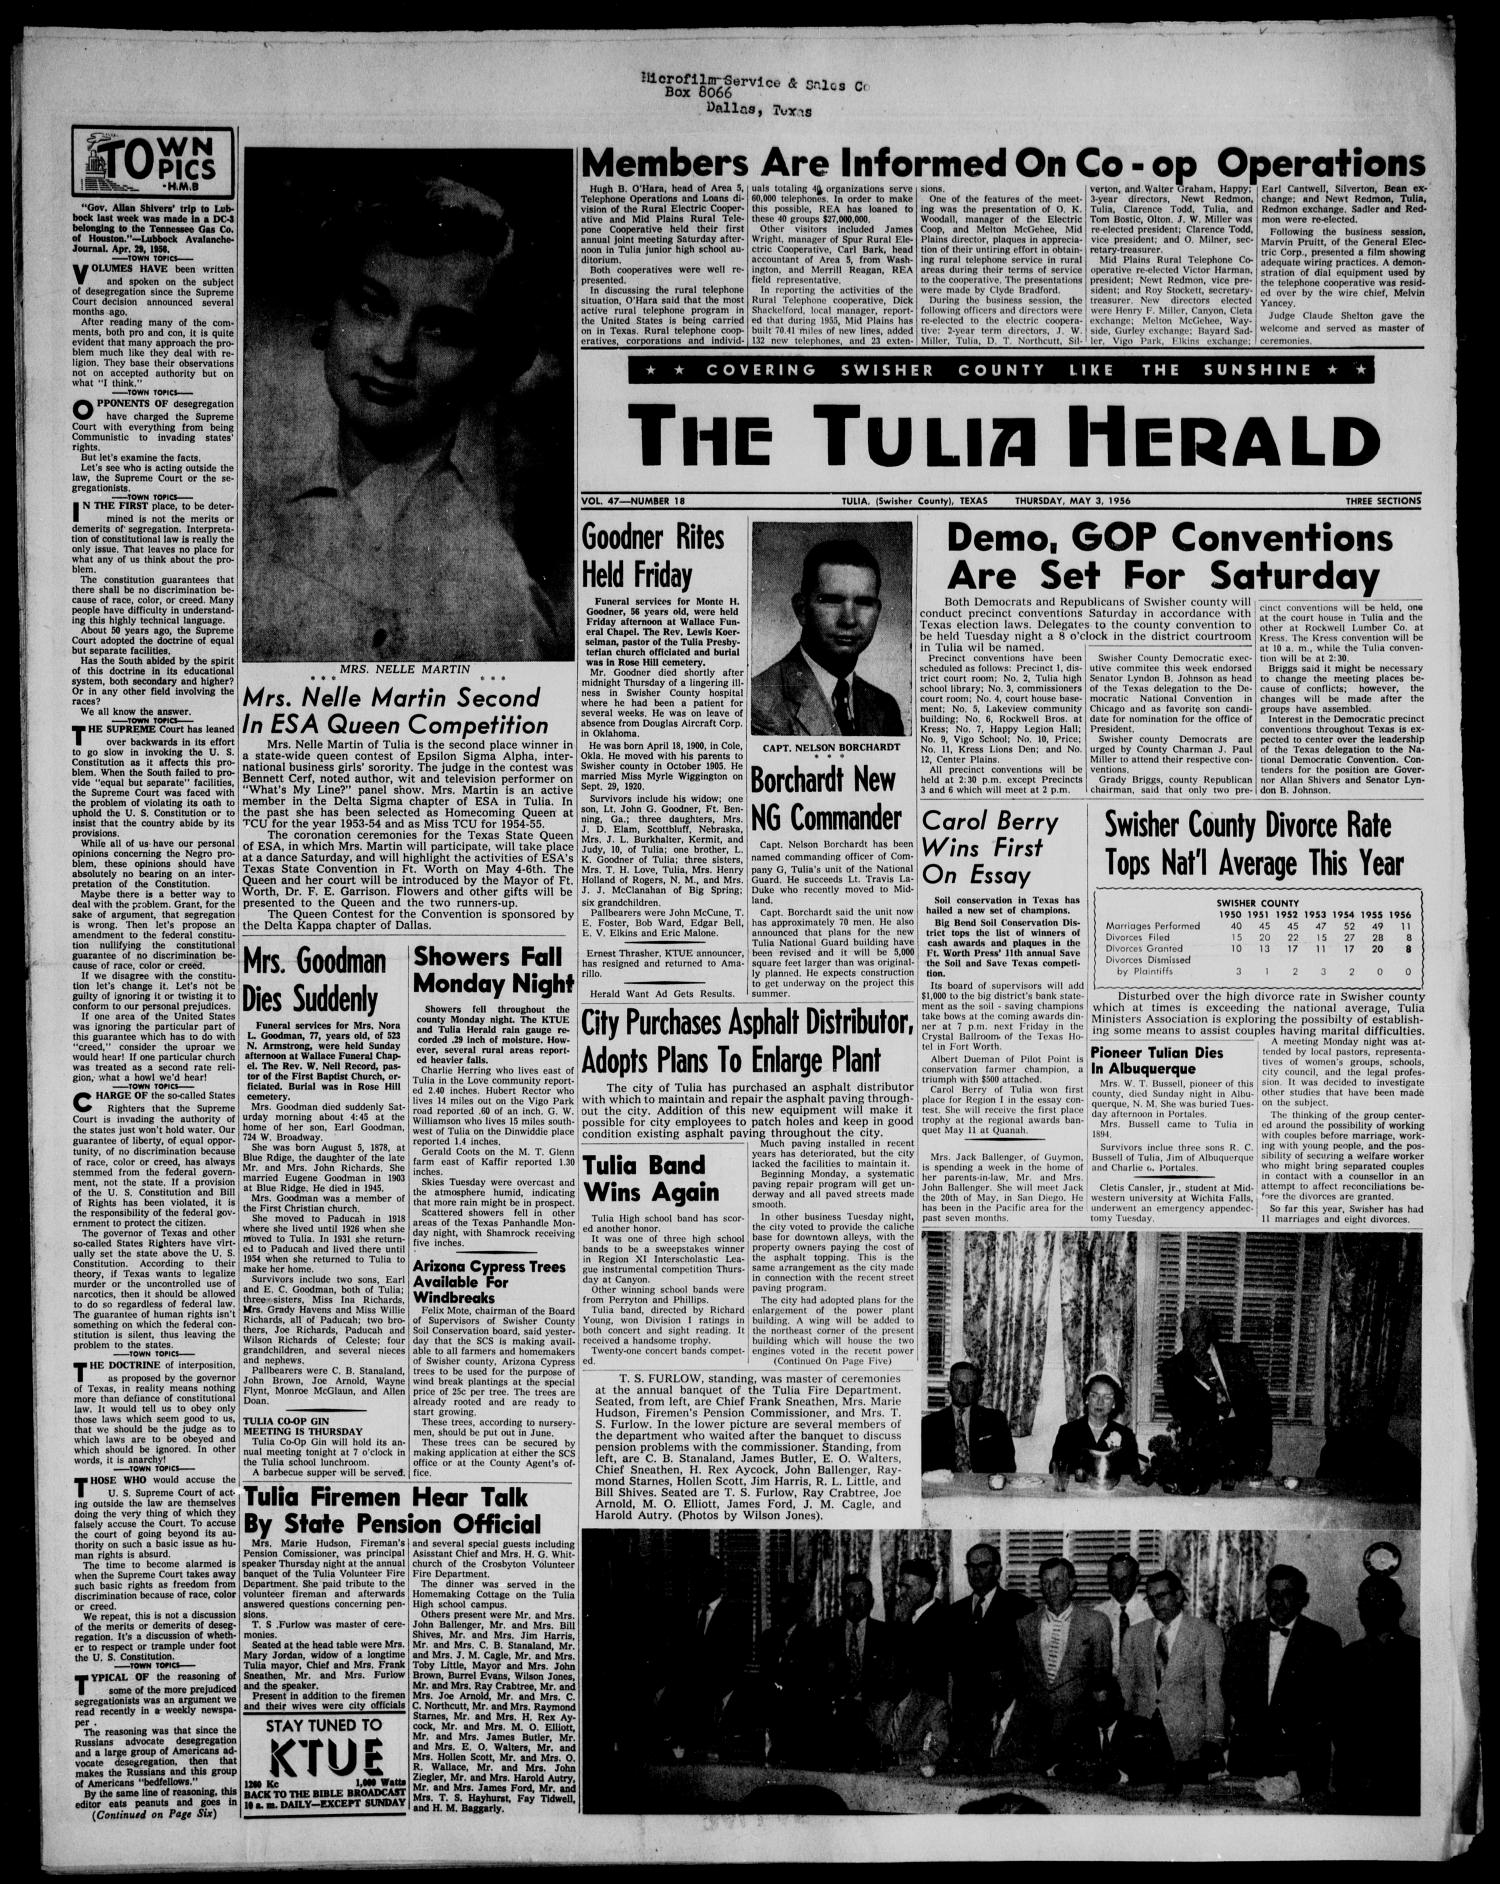 The Tulia Herald (Tulia, Tex), Vol. 47, No. 18, Ed. 1, Thursday, May 3, 1956
                                                
                                                    1
                                                